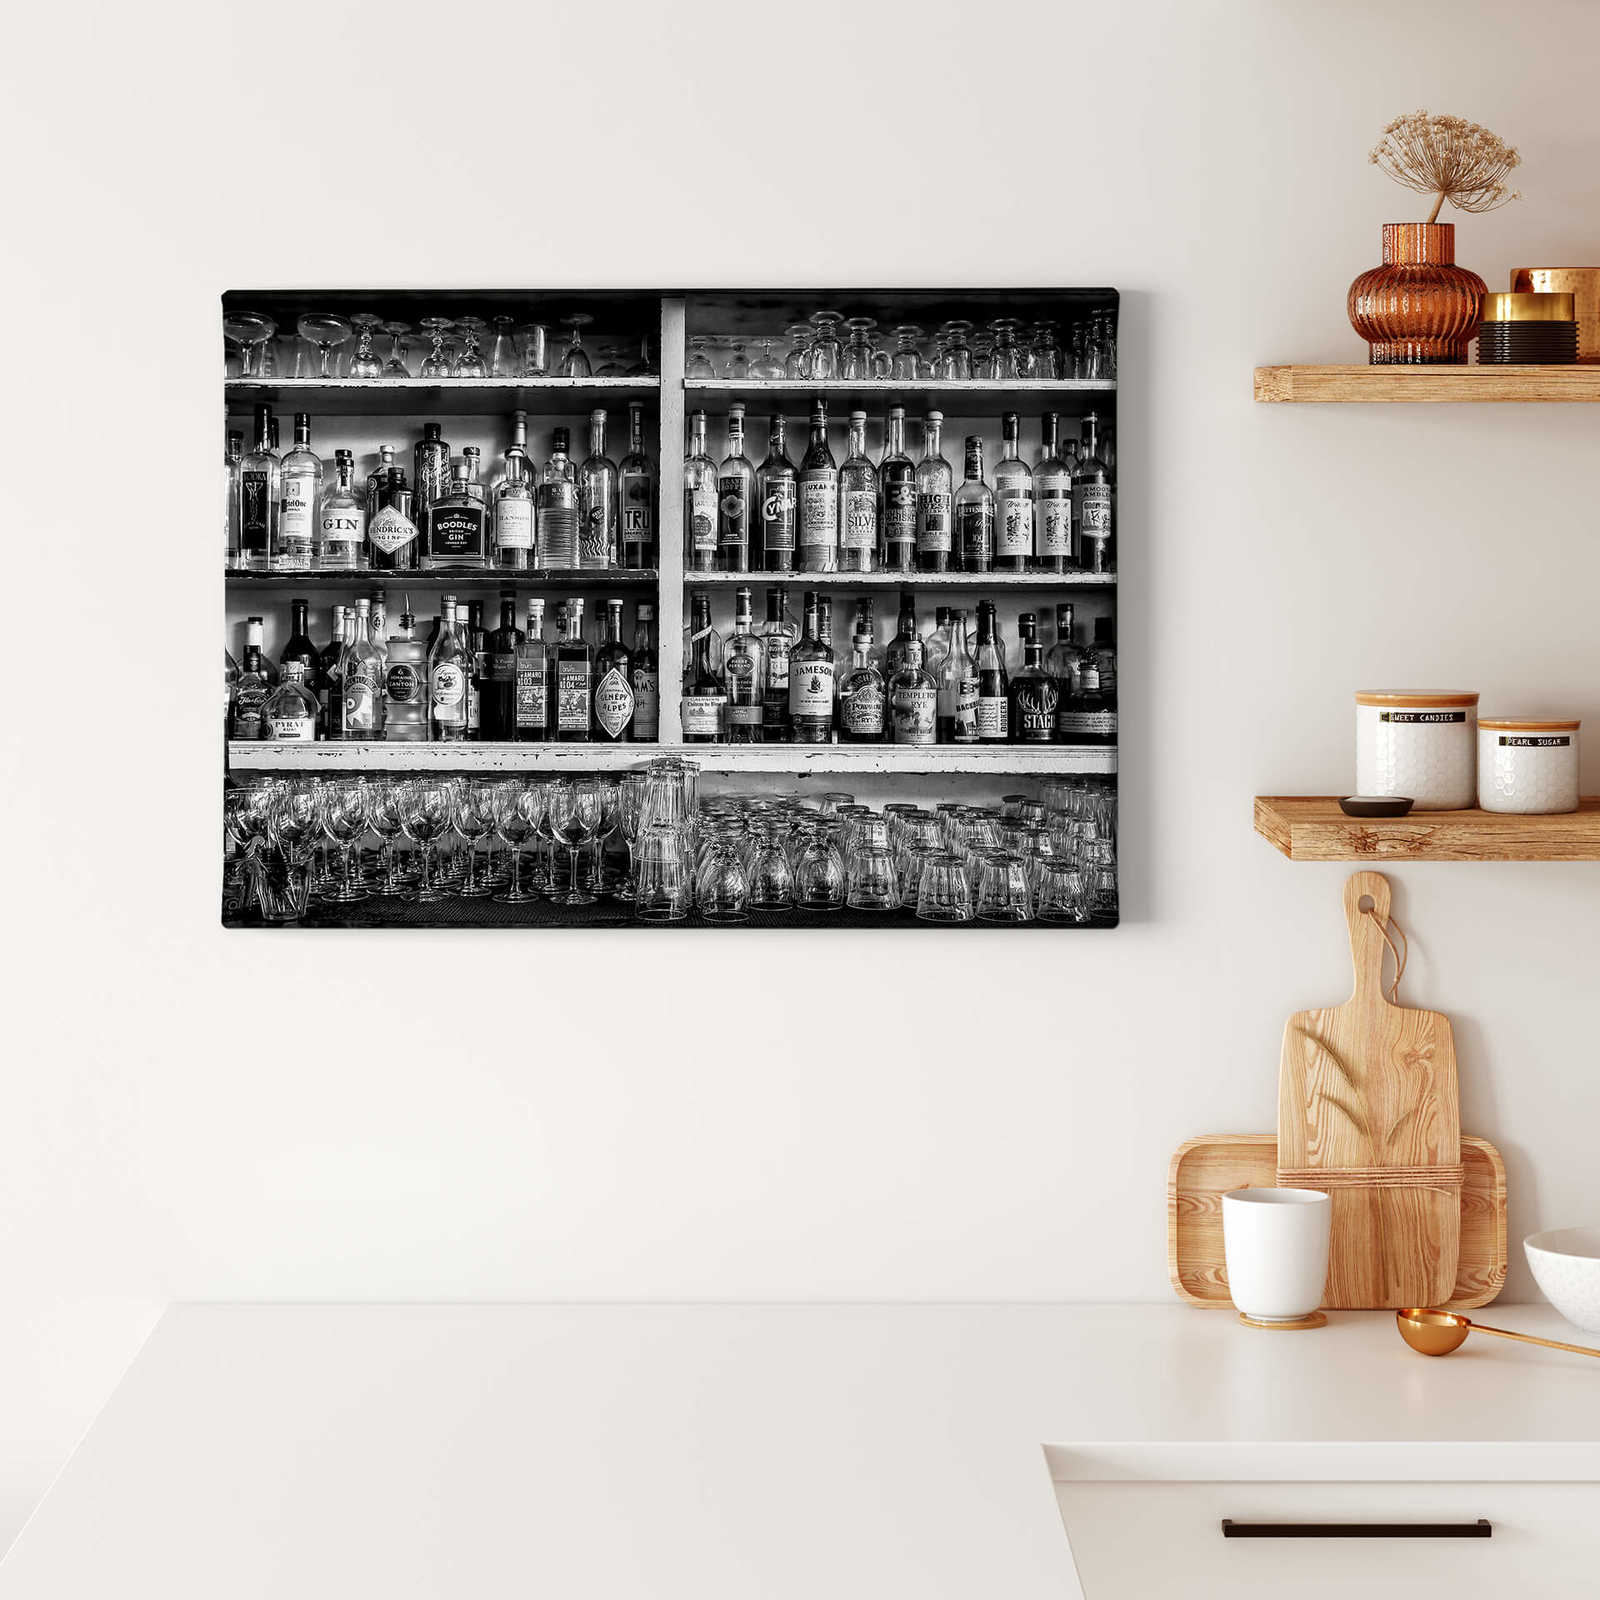             Toile noir et blanc Bar avec bouteilles & verres - 0,70 m x 0,50 m
        